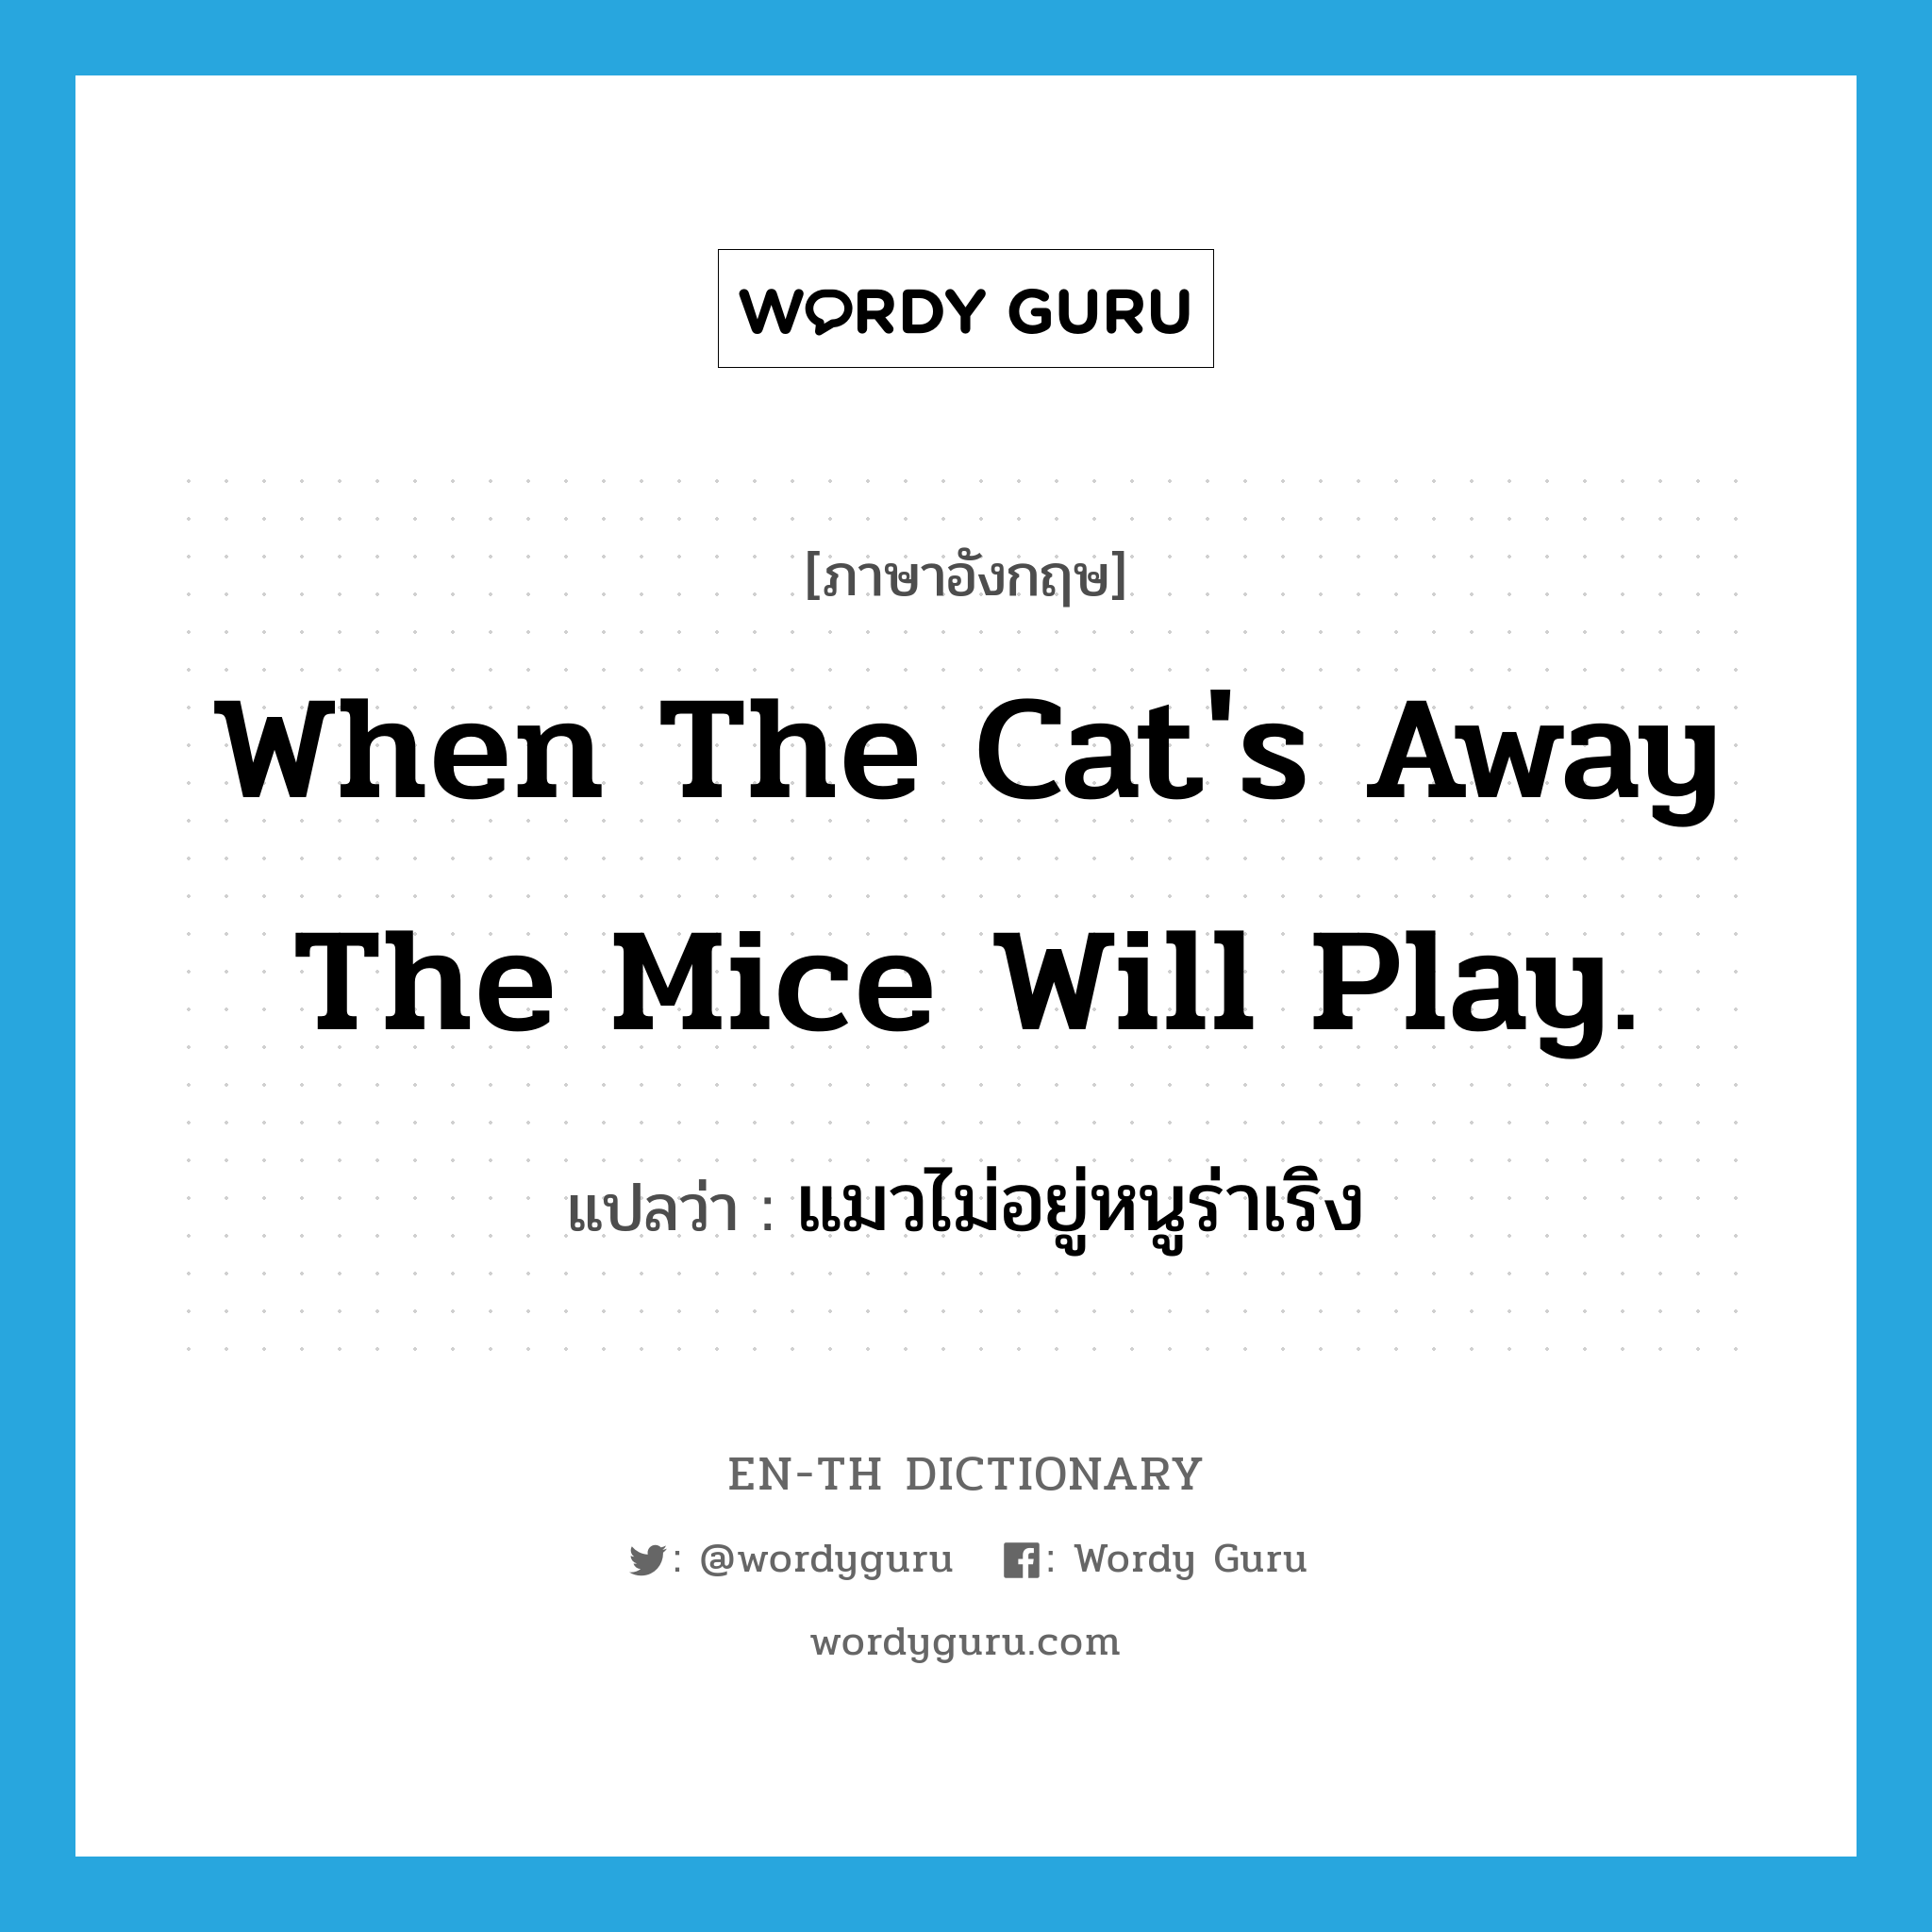 แมวไม่อยู่หนูร่าเริง ภาษาอังกฤษ?, คำศัพท์ภาษาอังกฤษ แมวไม่อยู่หนูร่าเริง แปลว่า When the cat's away the mice will play. ประเภท IDM หมวด IDM